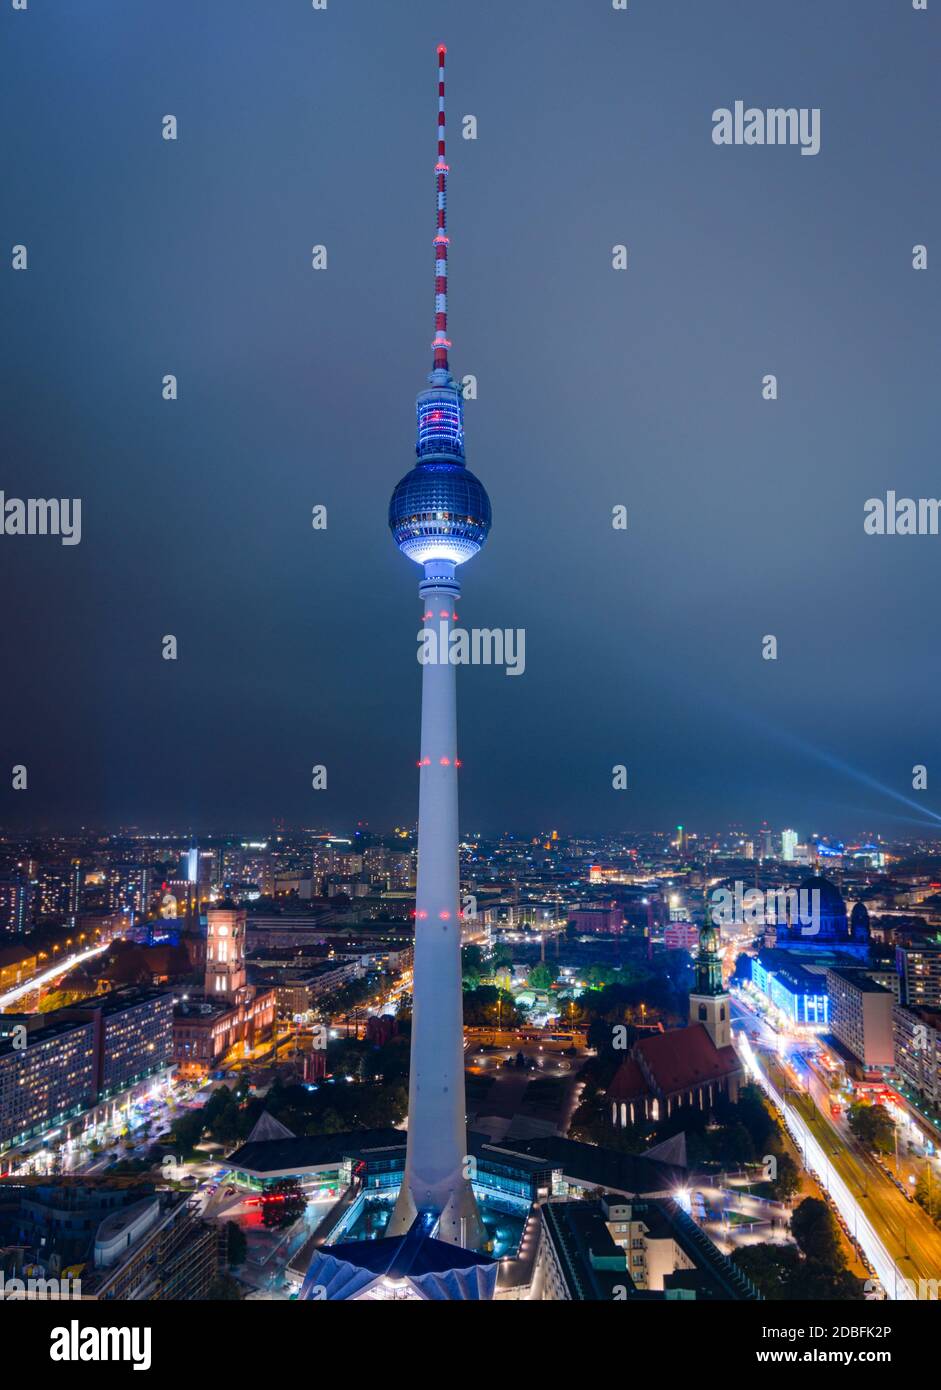 Berlin, Deutschland - 5 Okt 2013 der Fernsehturm, ein berühmtes Berliner Wahrzeichen, wird während des Light Fest 2013 bei Nacht in Berlin beleuchtet Stockfoto